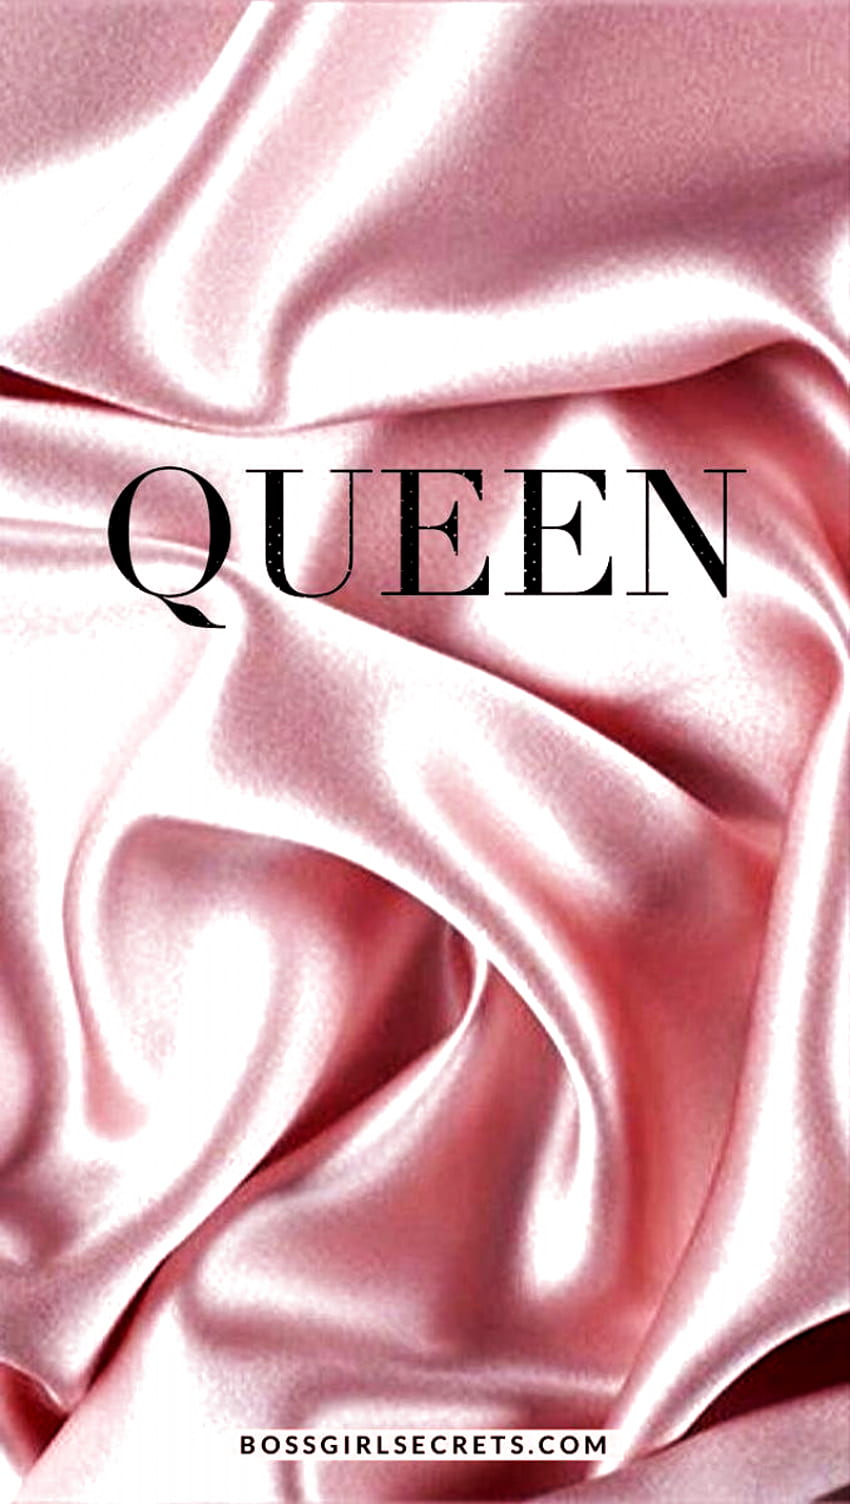 Hình Nền Điện Thoại IPhone Nữ Hoàng Màu Hồng - Sự hòa quyện hoàn hảo giữa màu hồng và nữ hoàng đã nhằm tạo nên một bức hình nền đẹp quyến rũ và tinh tế. Nếu bạn đang tìm kiếm một hình nền đầy phong cách cho IPHONE của bạn, hãy lựa chọn Hình Nền Điện Thoại IPhone Nữ Hoàng Màu Hồng.